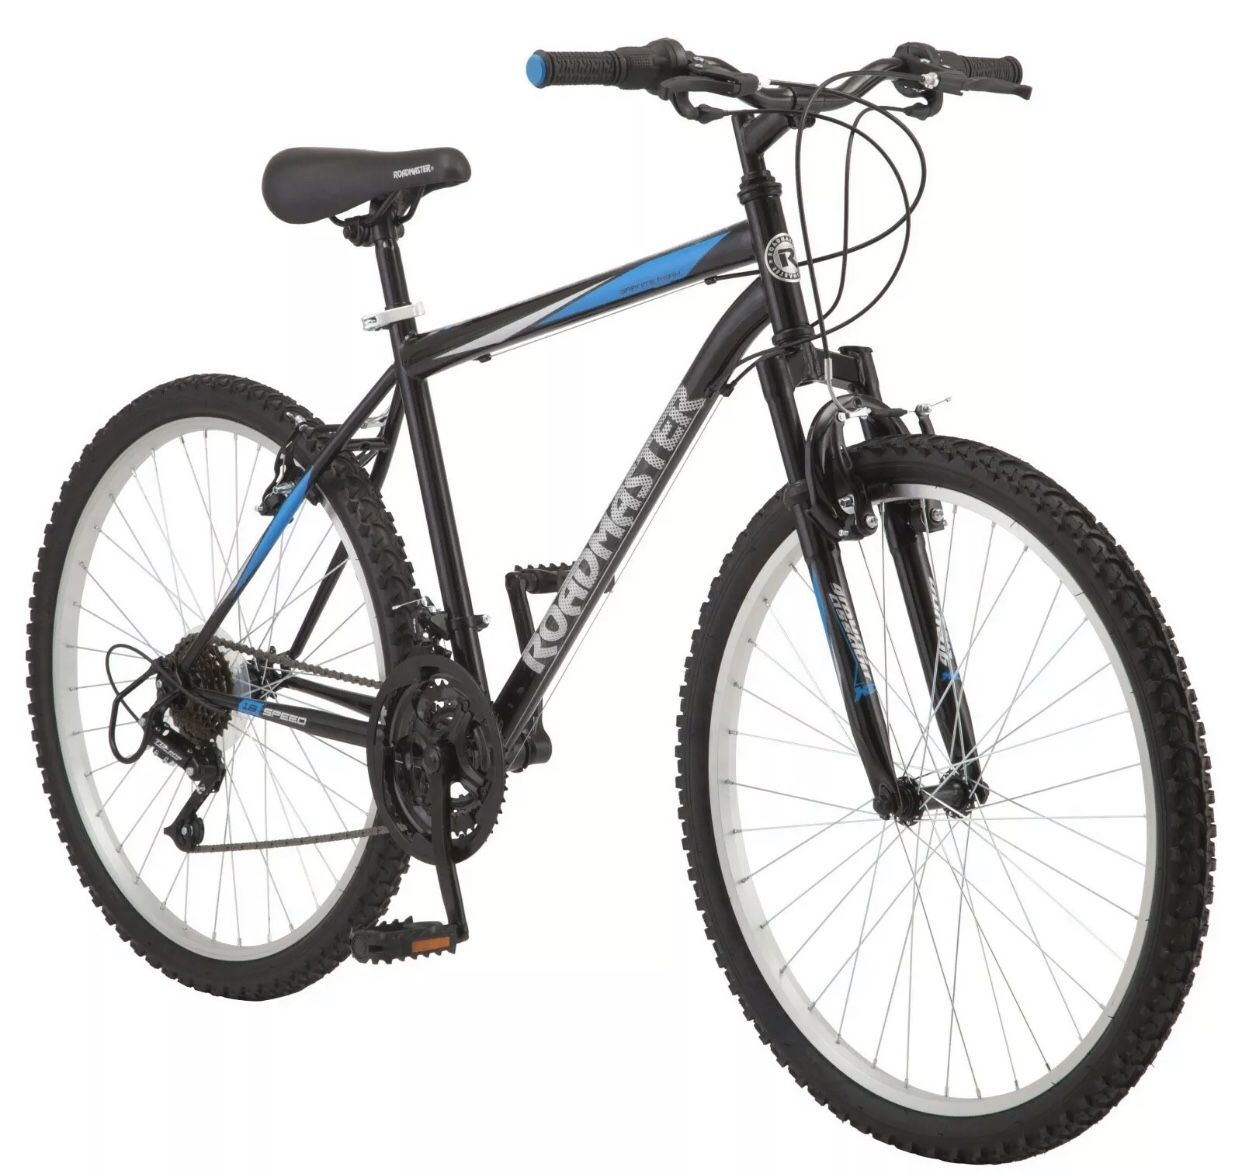 Roadmaster Granite Peak Men’s Mountain Bike 26in. Wheels in Black/Blue BRAND NEW IN BOX